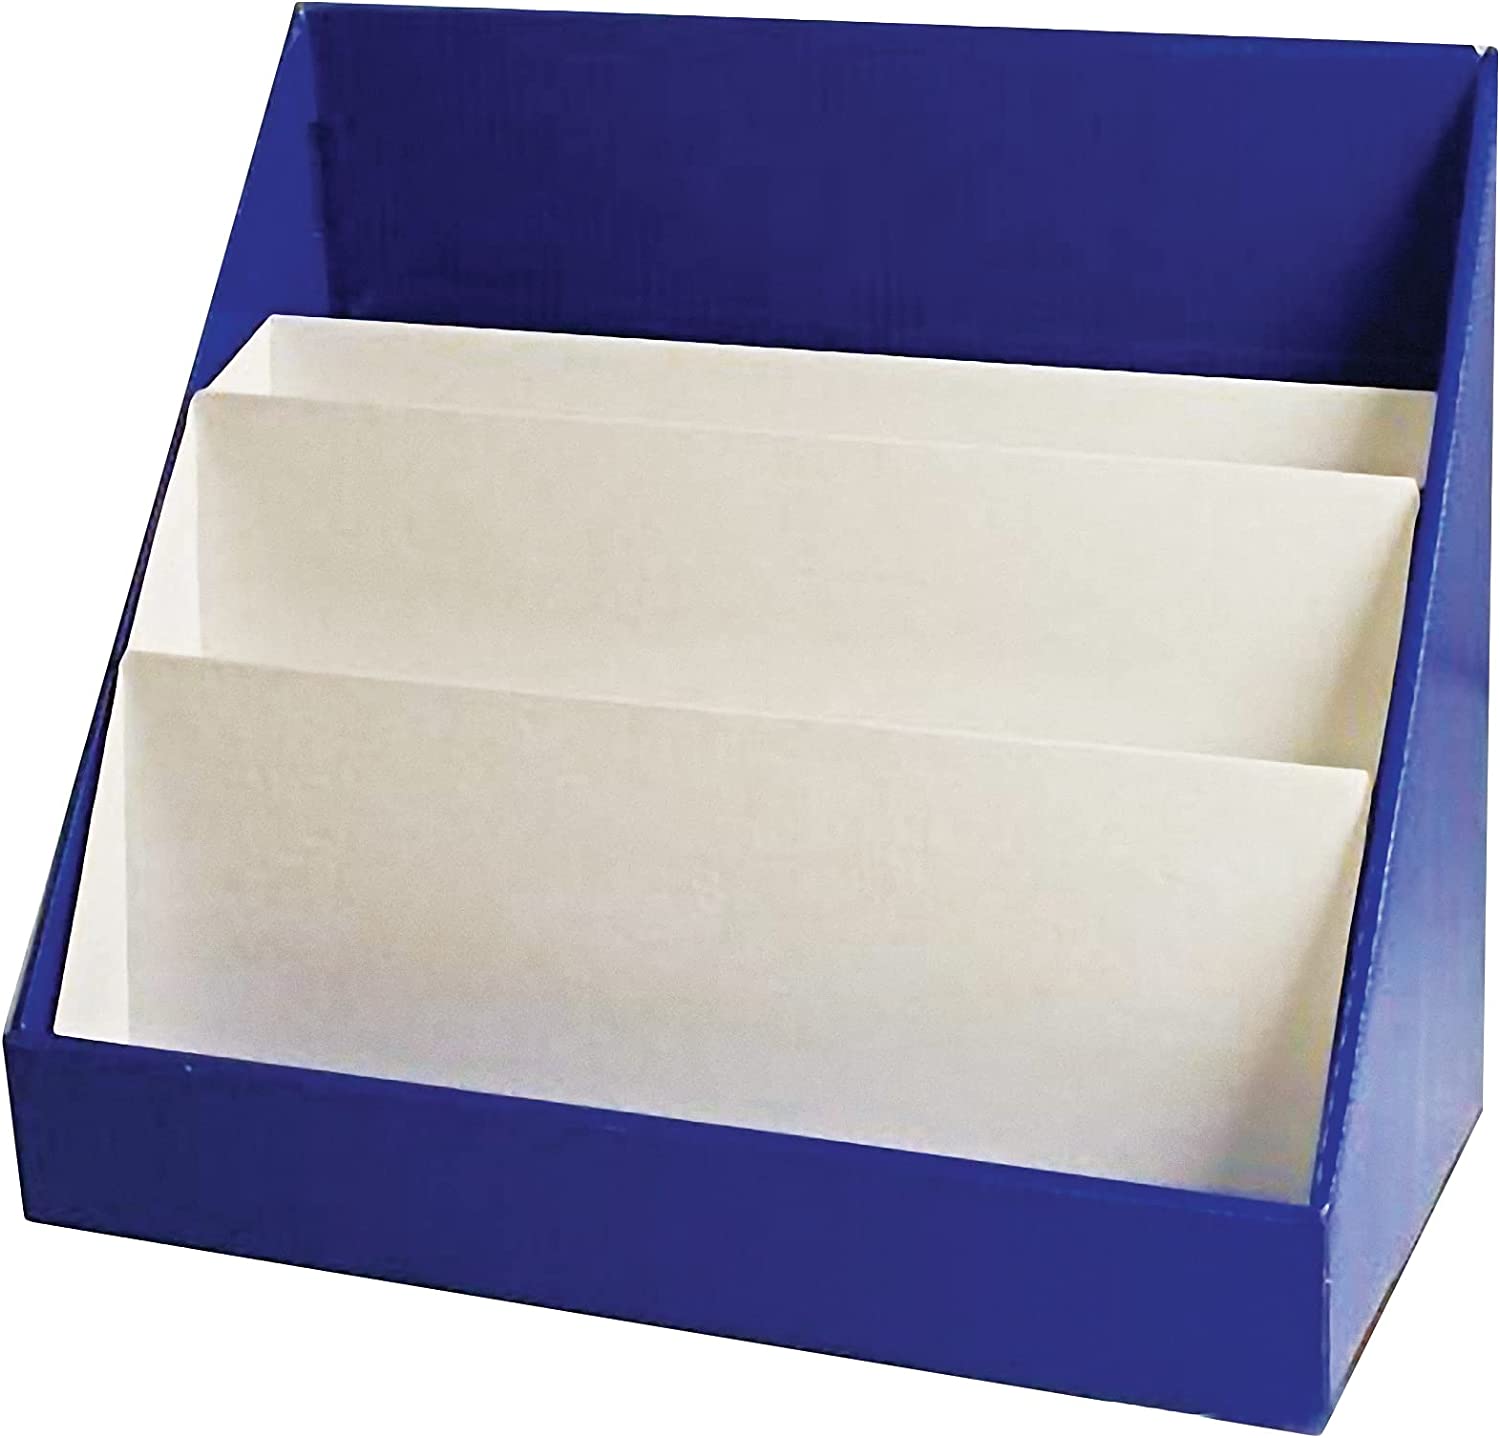 17"H X 20"W X 10"D 1 Unit Classroom Keepers Blue Cardboard BookShelf 